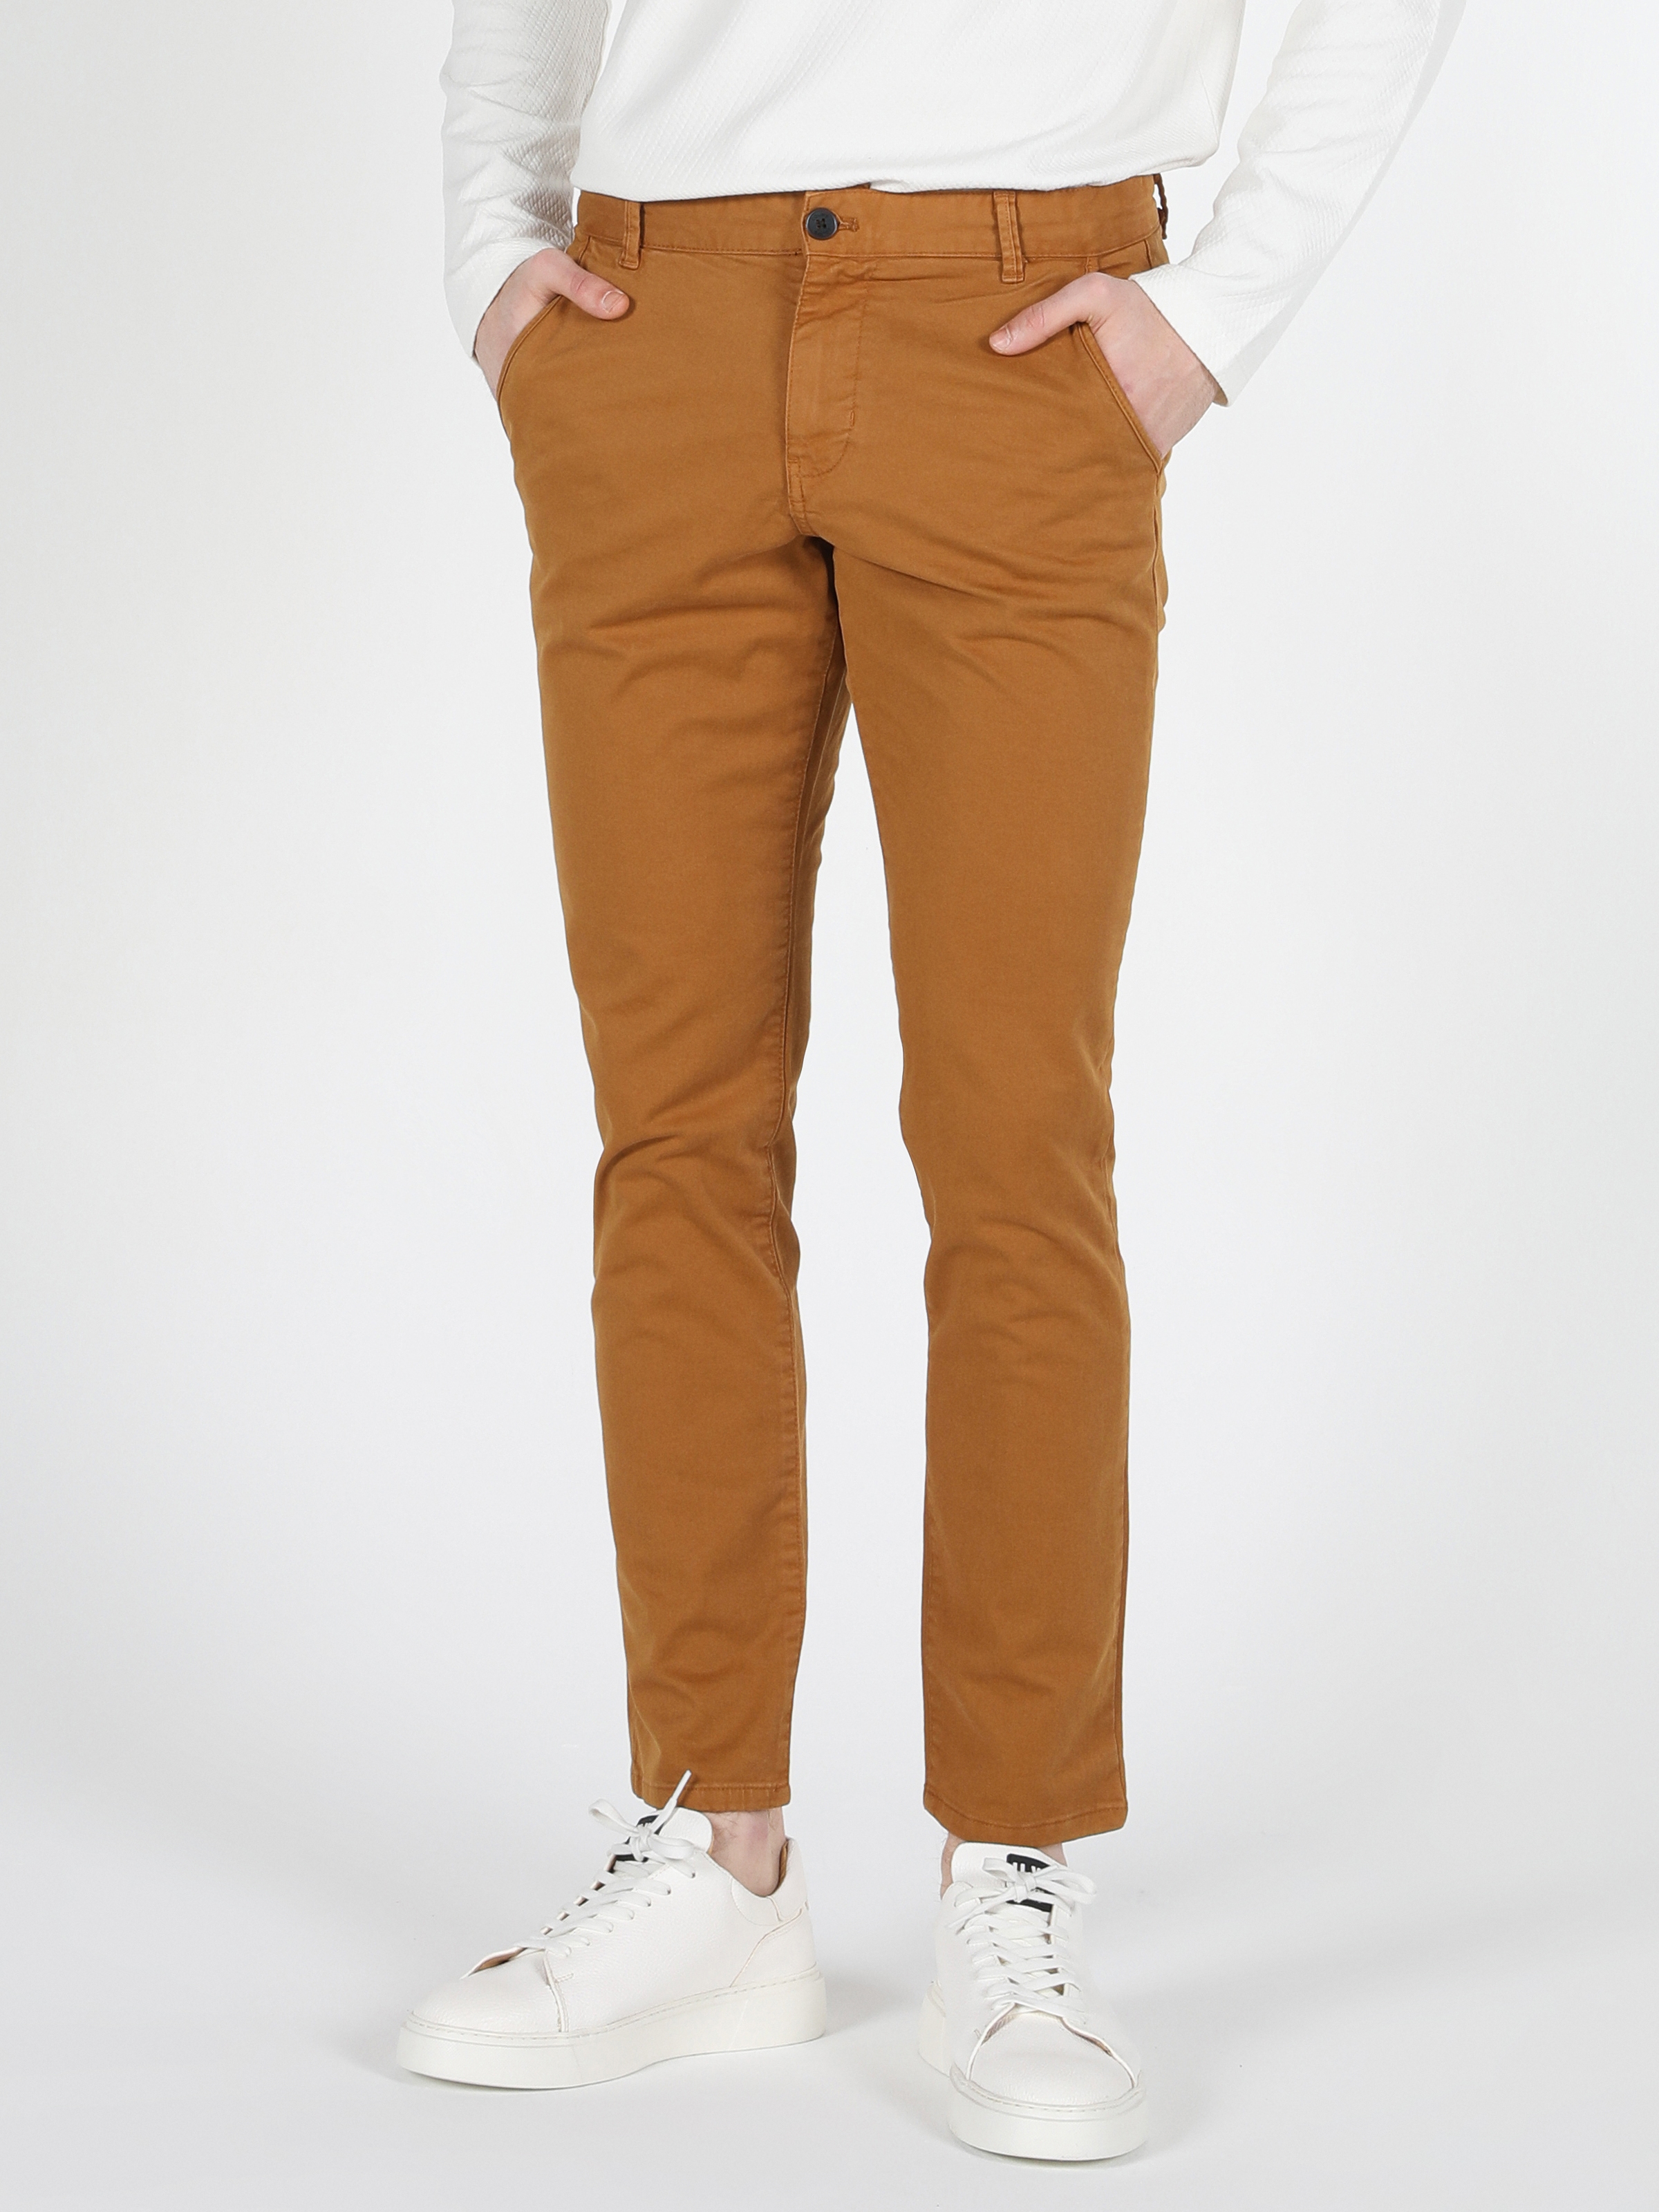 Afficher les détails de Pantalon Homme Jaune Coupe Slim Taille Moyenne Jambe Droite